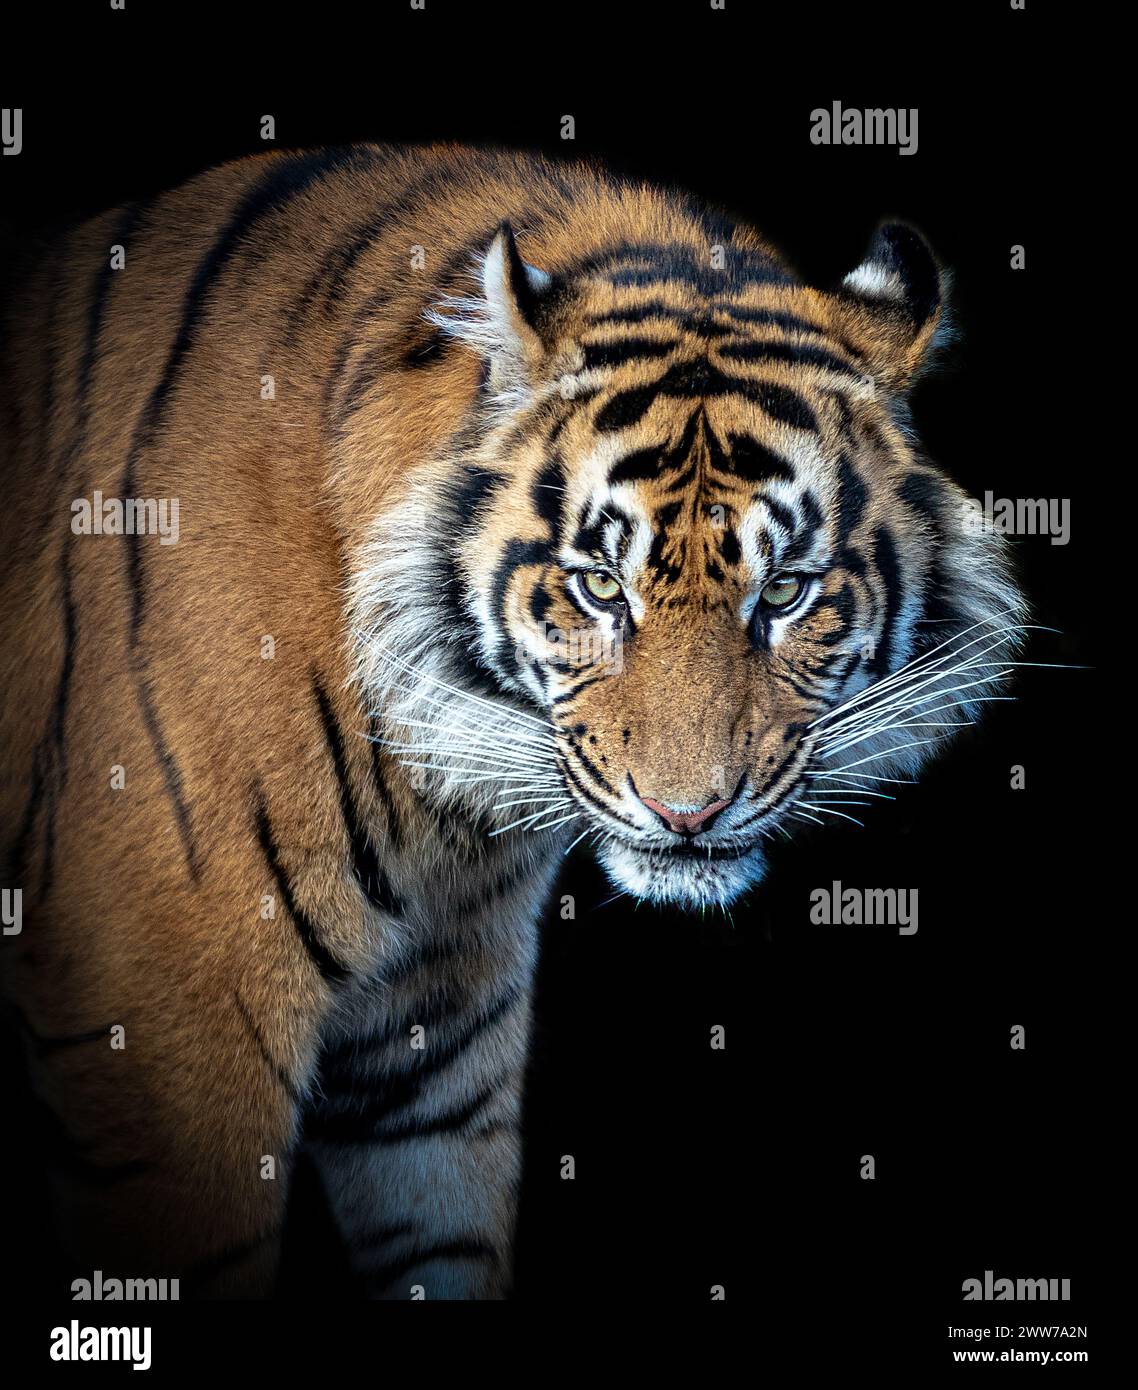 Der Tiger starrt den Fotografen LONDON ZOO hinunter. WUNDERSCHÖNE BILDER eines Tigers, der von seiner Reflexion verwirrt ist, wurden aufgenommen Stockfoto